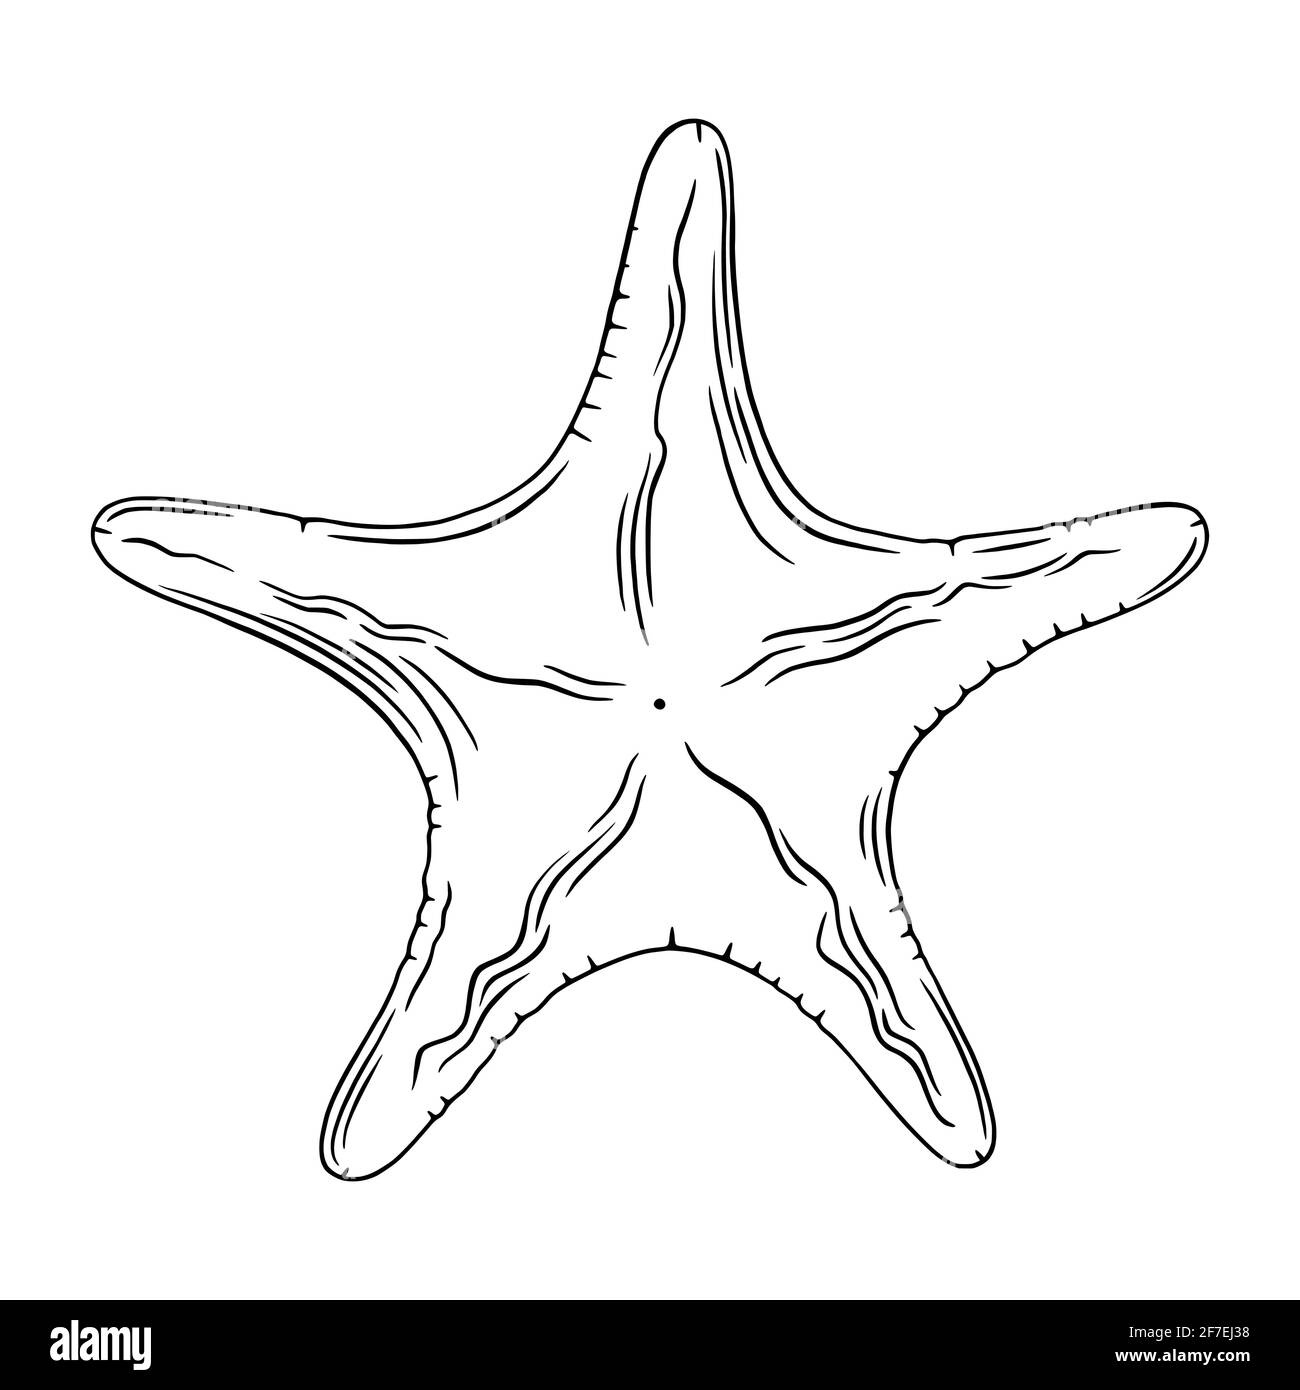 Meeresschnitzergravur. Ocean Star Skizze isoliert in weißem Hintergrund. Gravierte Vektorgrafik Stock Vektor